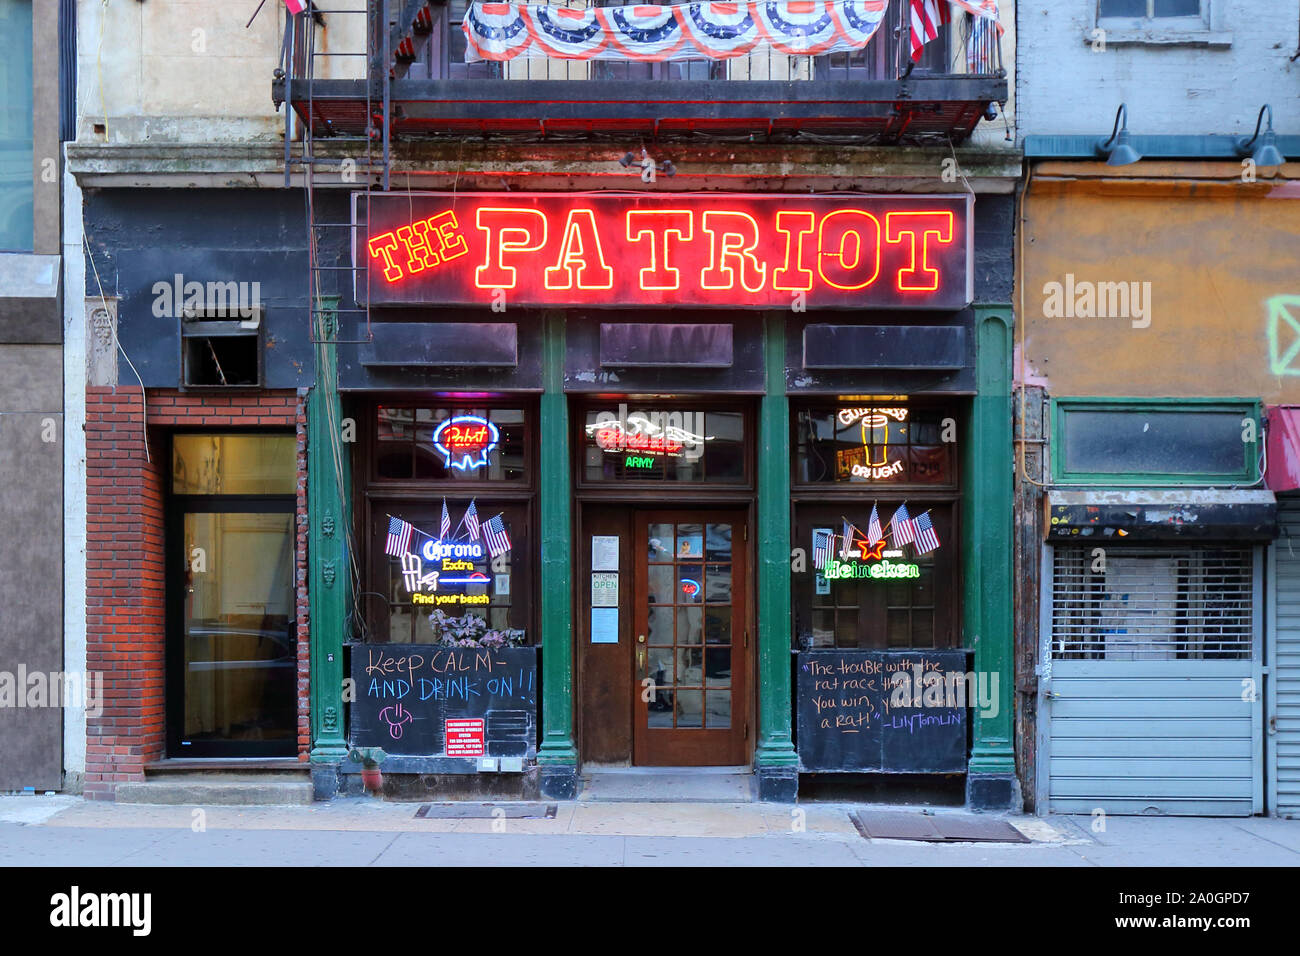 Patriot tricuerpo, 110 Chambers Street, New York, NY. exterior del escaparate de un bar en el distrito financiero de Manhattan. Foto de stock